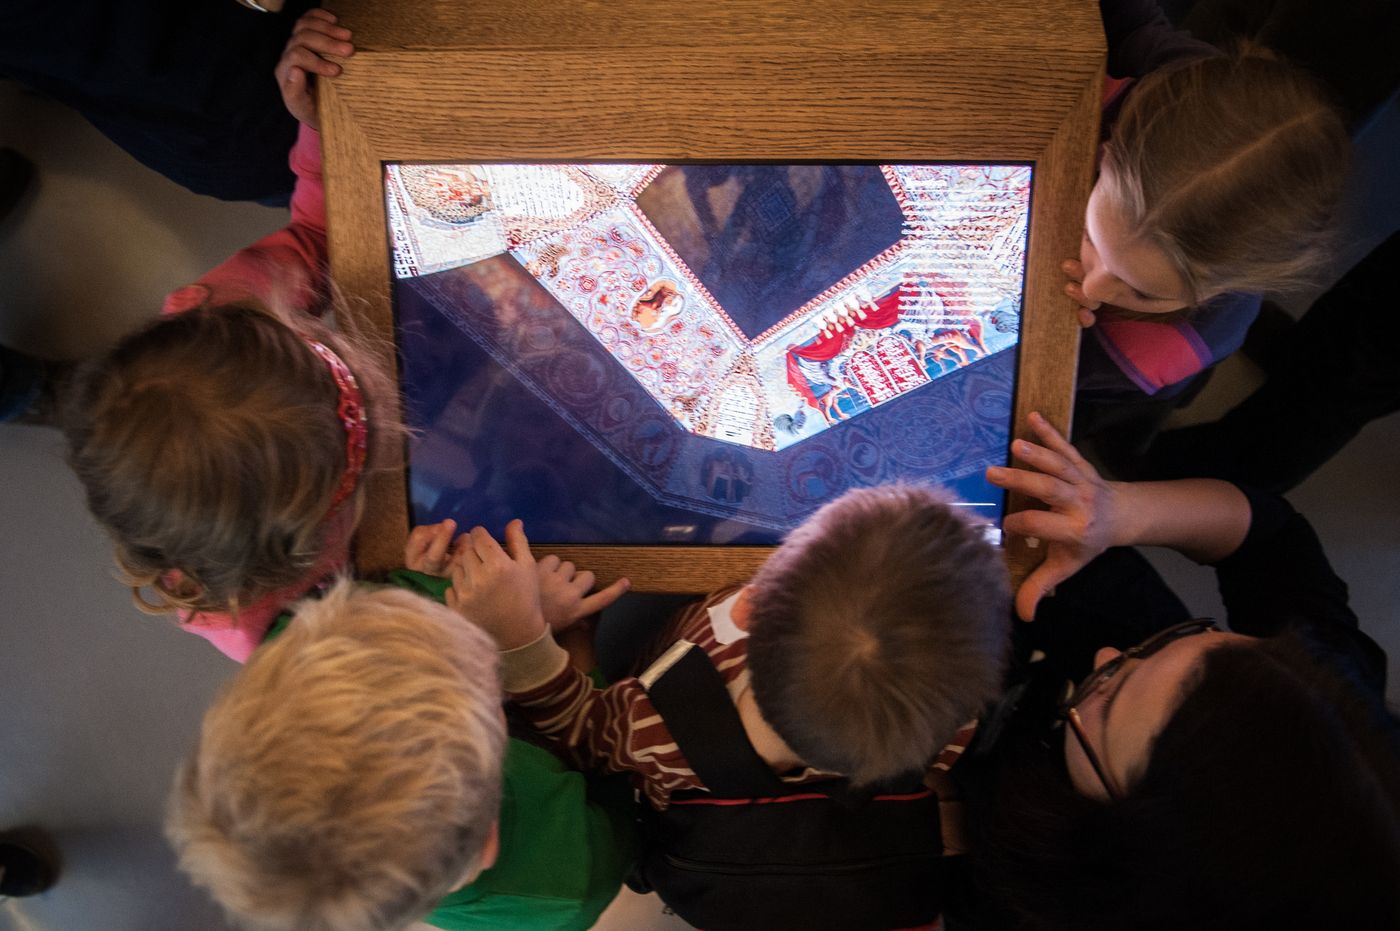 Kilkoro dzieci zgromadzonych wokół ekranu multimedialnego.